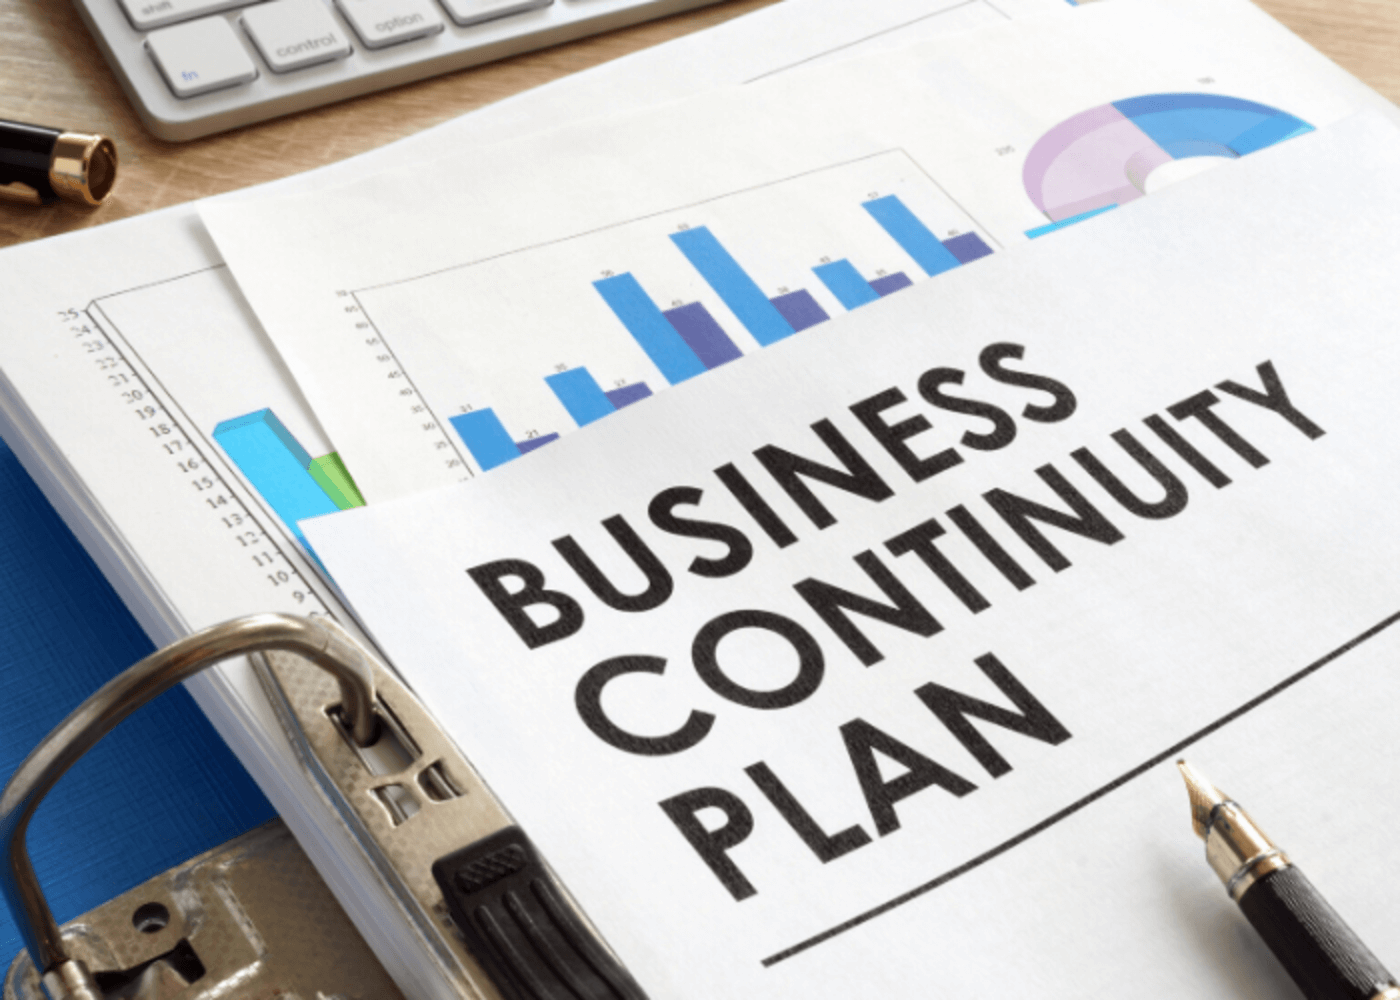 ISO, zarządzanie ciągłością działania, business continuity plan